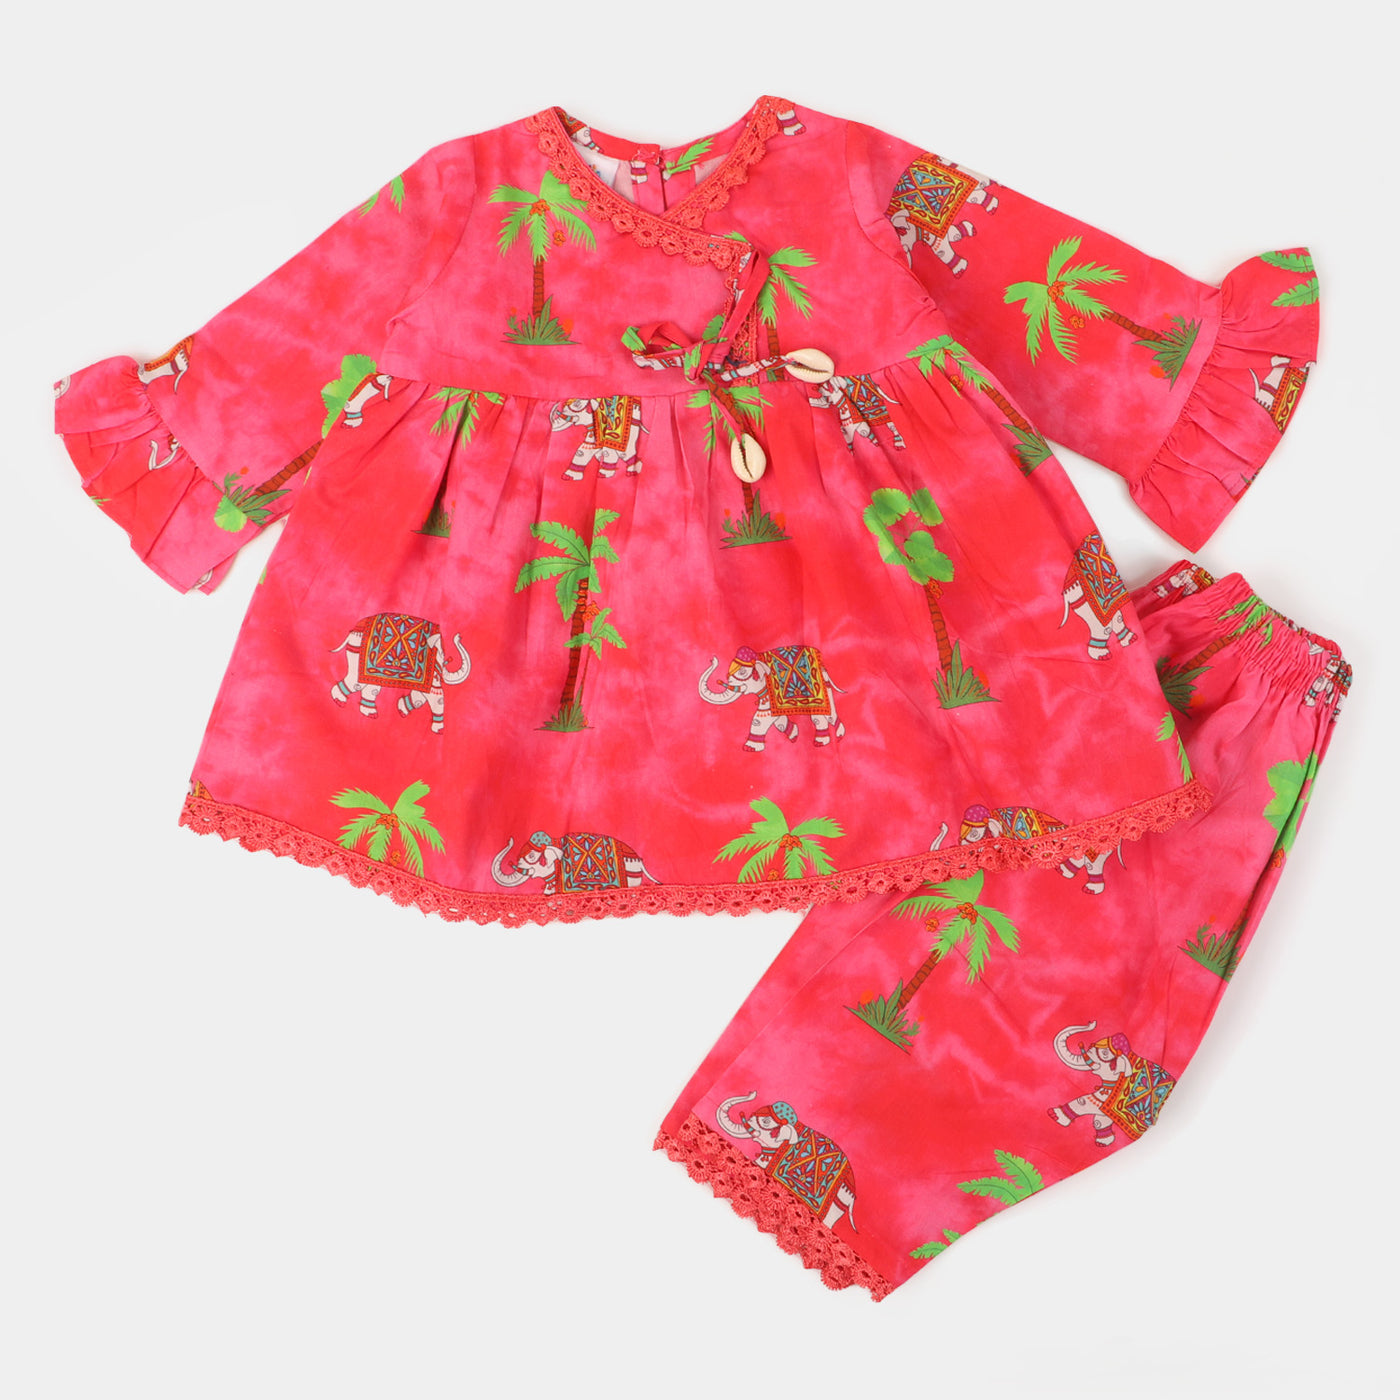 Infant Girls Cotton Digital Print 2Pcs Suit Jungle Elephant - Hot Pink